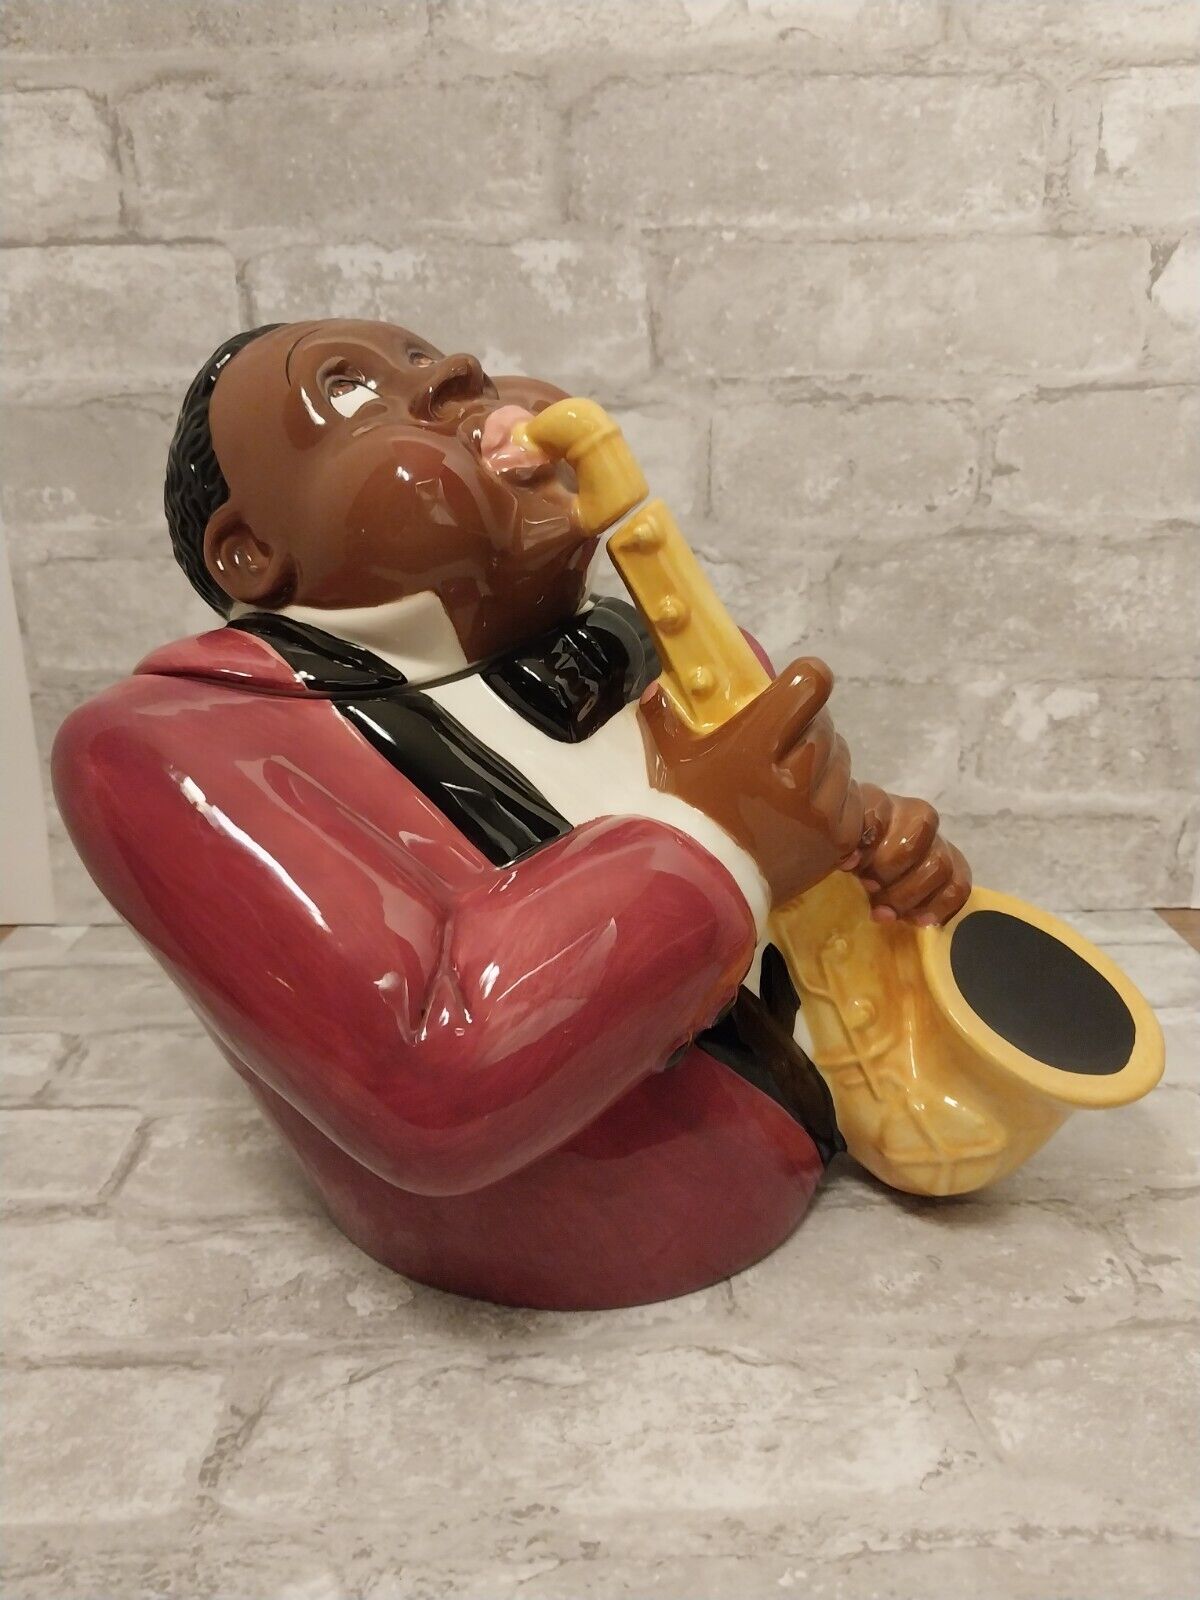 1996 Clay Art Jazz Player Cookie Jar Hand Painted Vintage